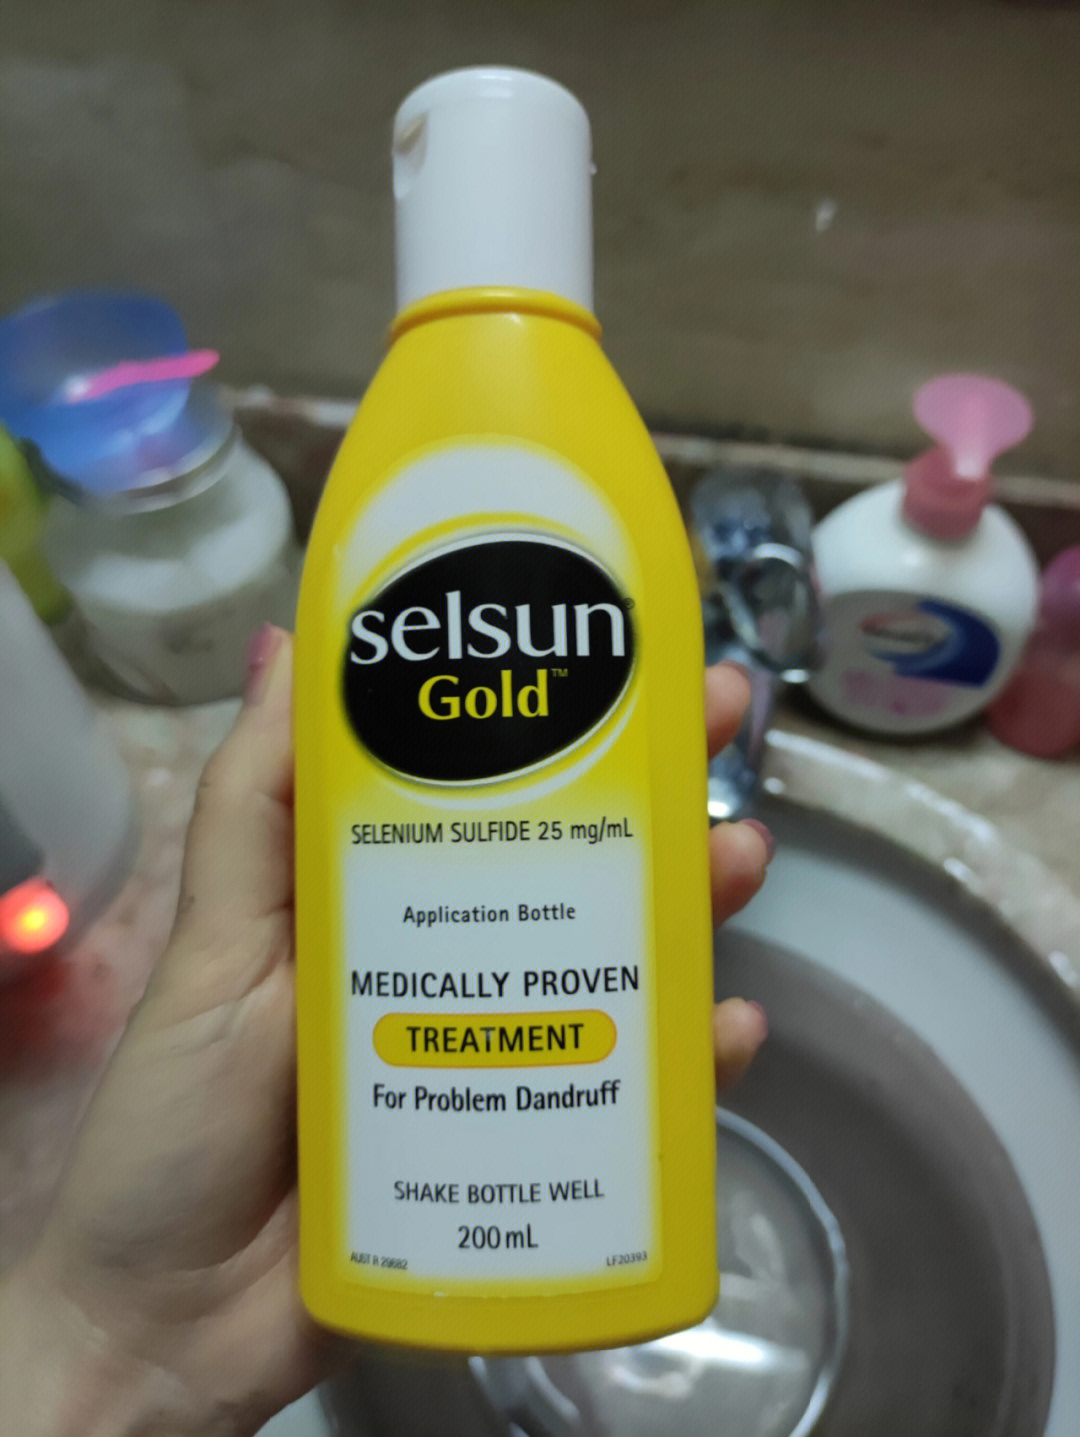 了很多洗发水,图一这个牌子的洗发水每种颜色都用过,黄色是药效最强的